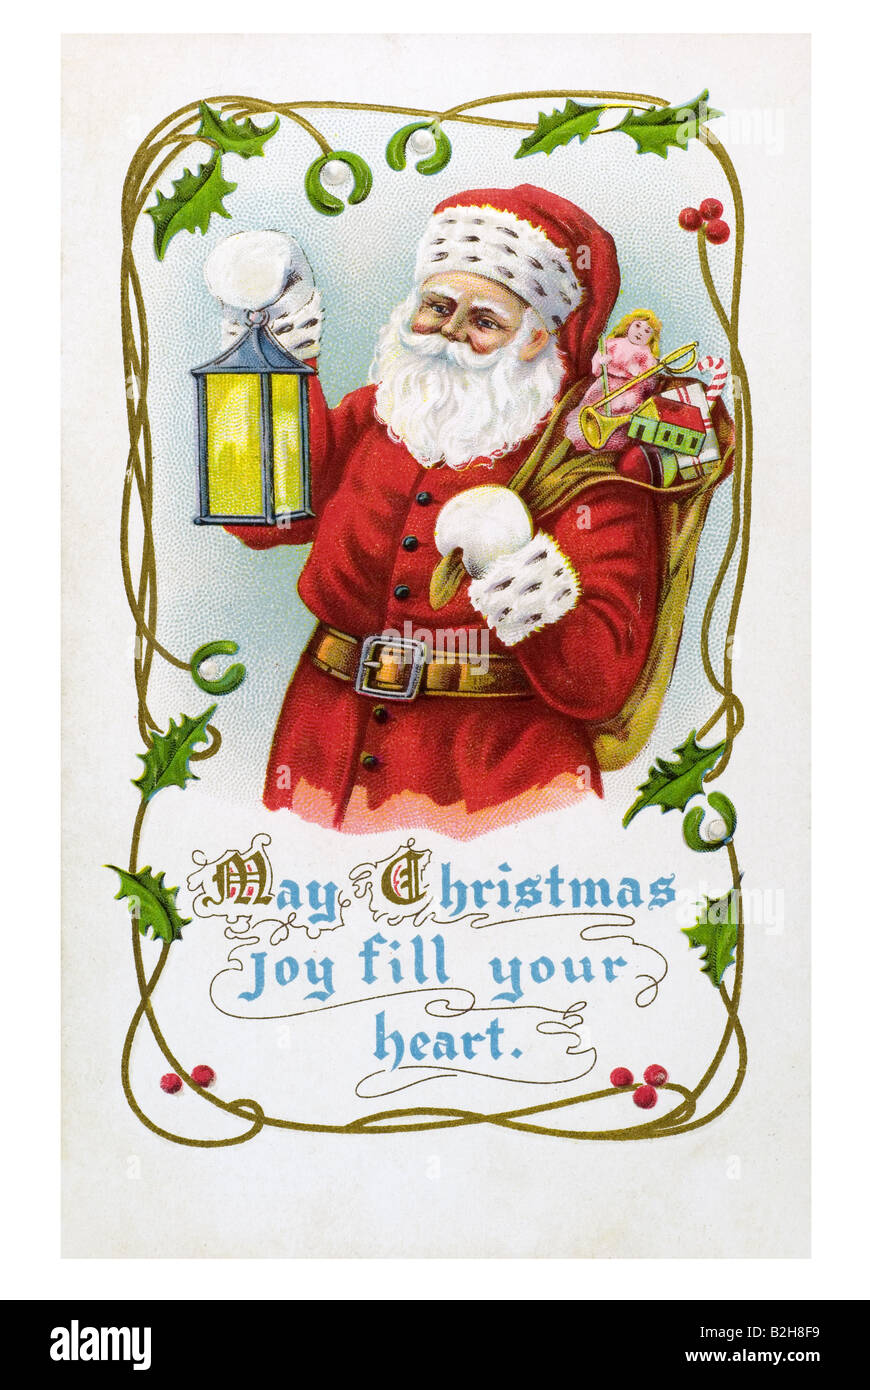 Motivo de postal antiguo Padre de Navidad roja y blanca barba vestido rojo cap guantes con la luminaria y el saco lleno de regalos Foto de stock